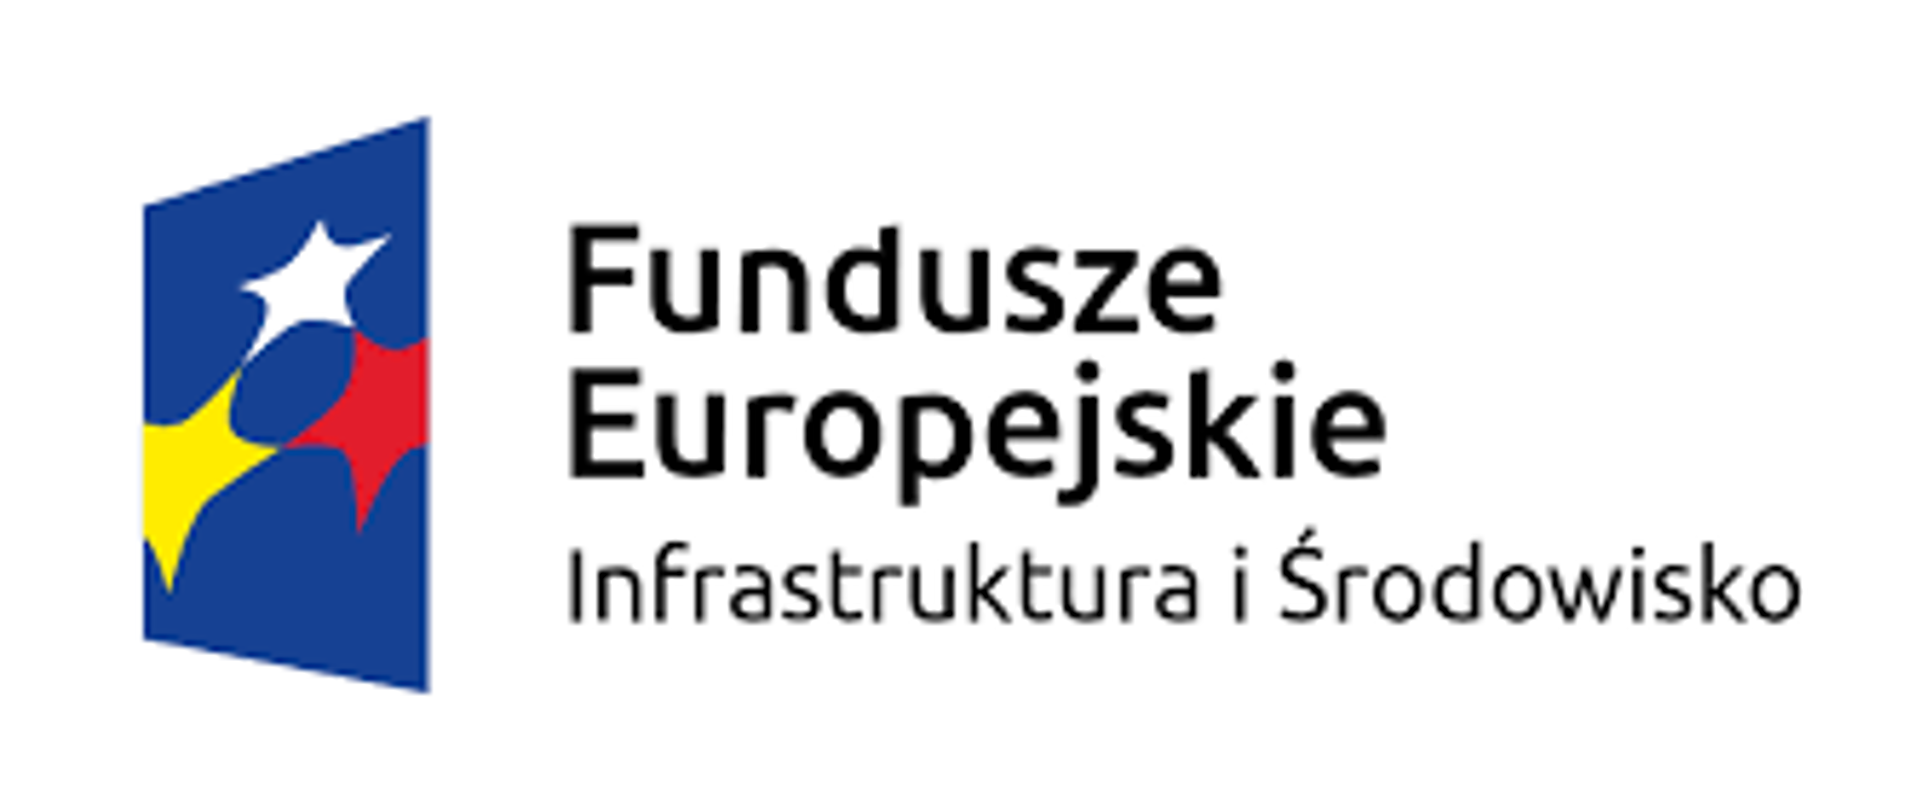 z lewej strony niebieska flaga w żółto czerwone i białe gwiazdki z prawej strony czarnym kolorem napisane fundusze europejskie Infrastruktura i Środowisko